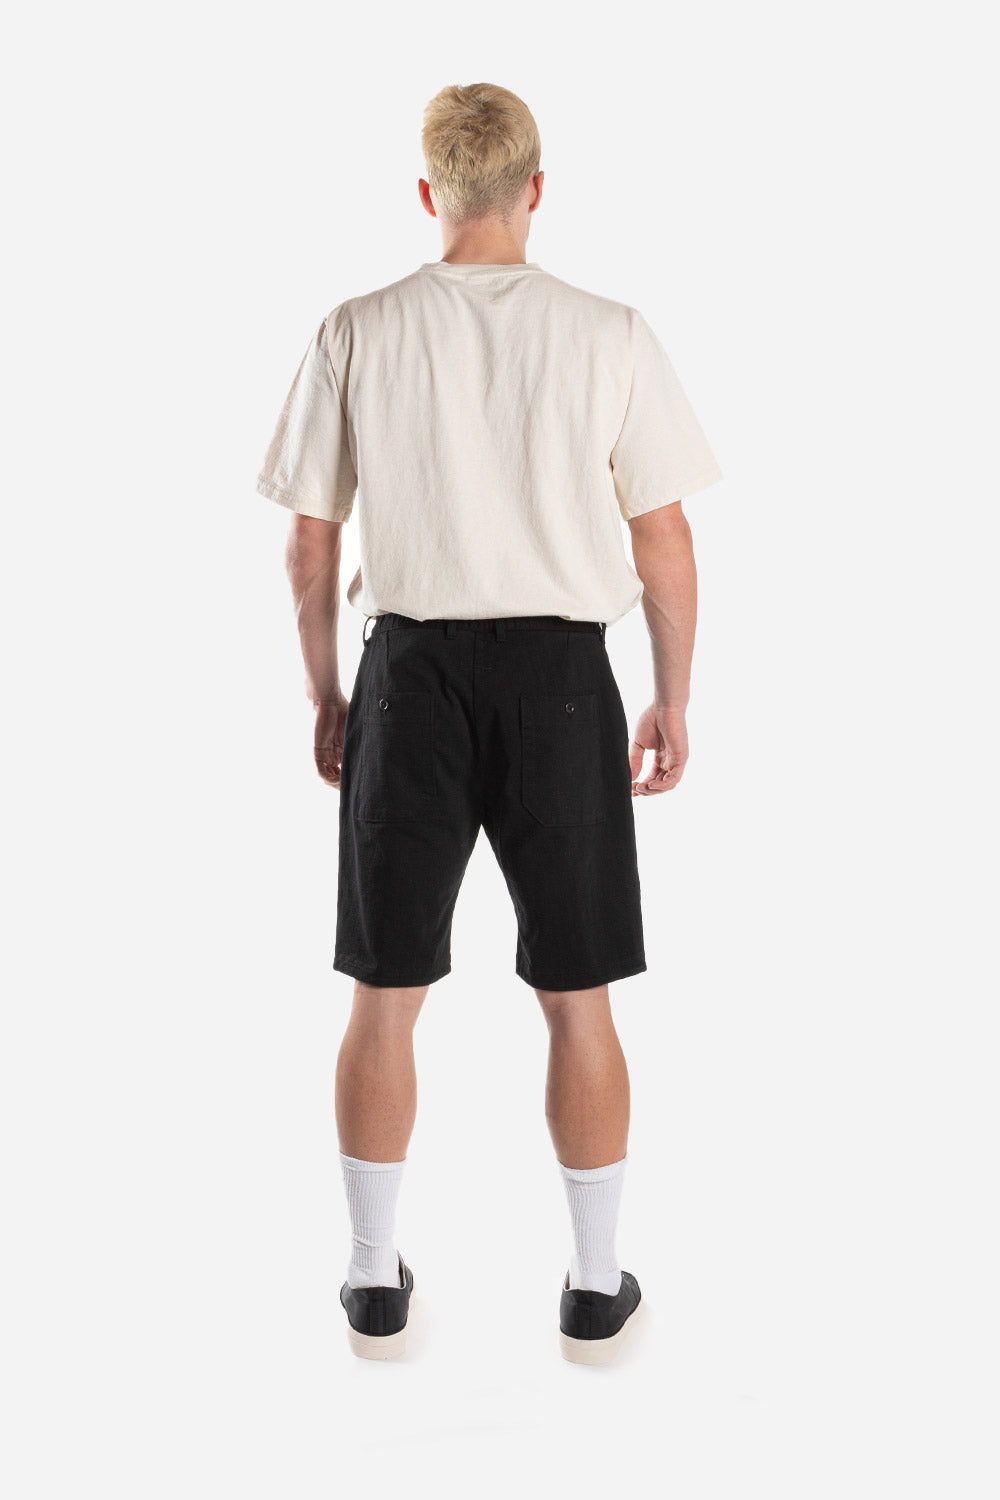 jackman-dotsume-shorts-black